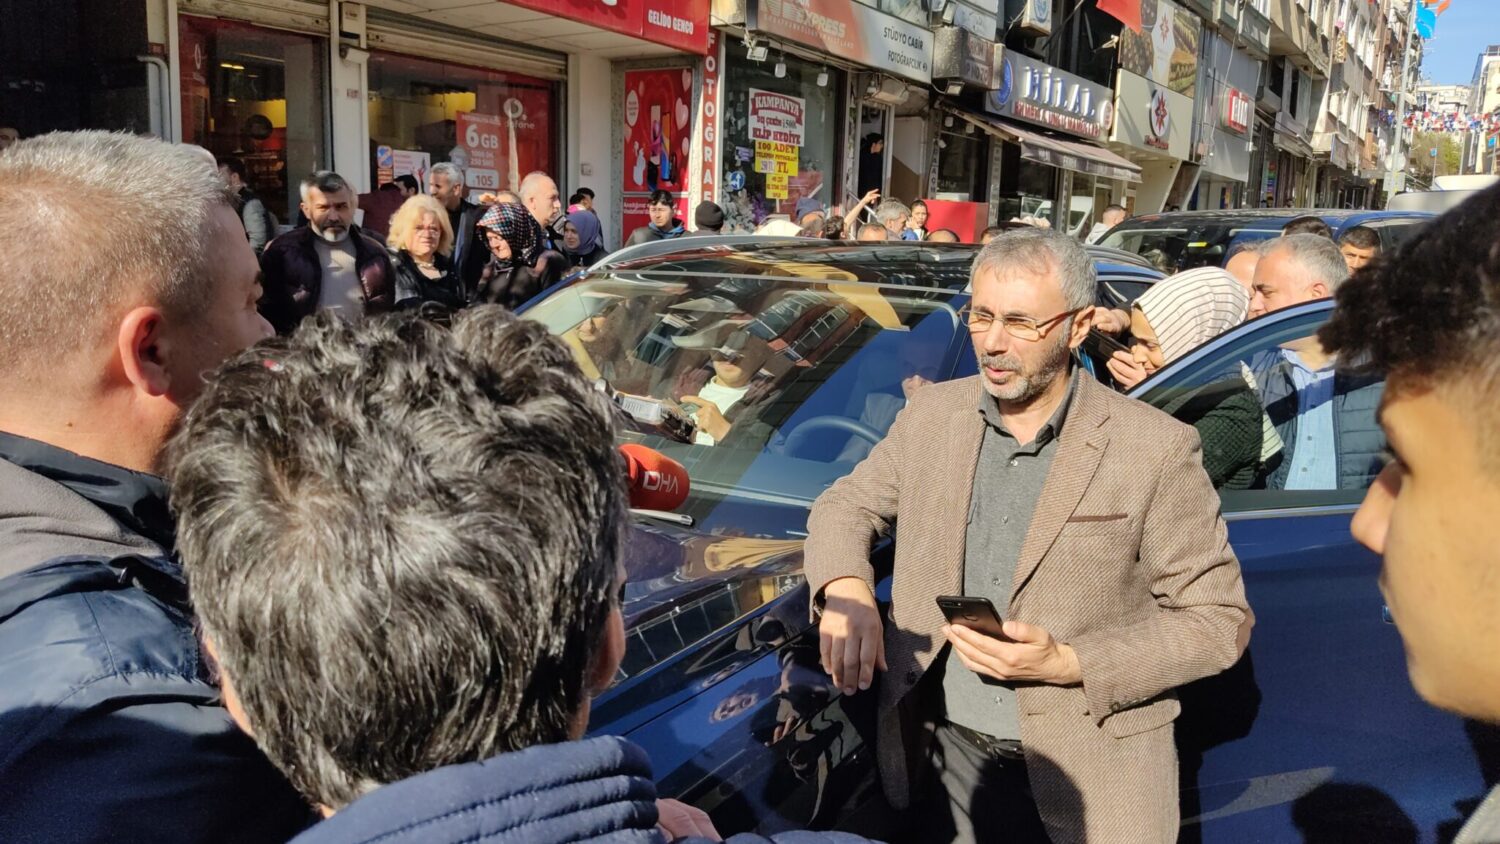 İçişleri Bakanı Süleyman Soylu, Esenler'de yerli otomobil olan TOGG ile şehir turu attı. Soylu, tur sırasında yaptığı açıklamada, "Cumhurbaşkanımızın liderliği ve iradesi nasıl sonuçlar doğuruyor görüyoruz" ifadelerini kullandı.